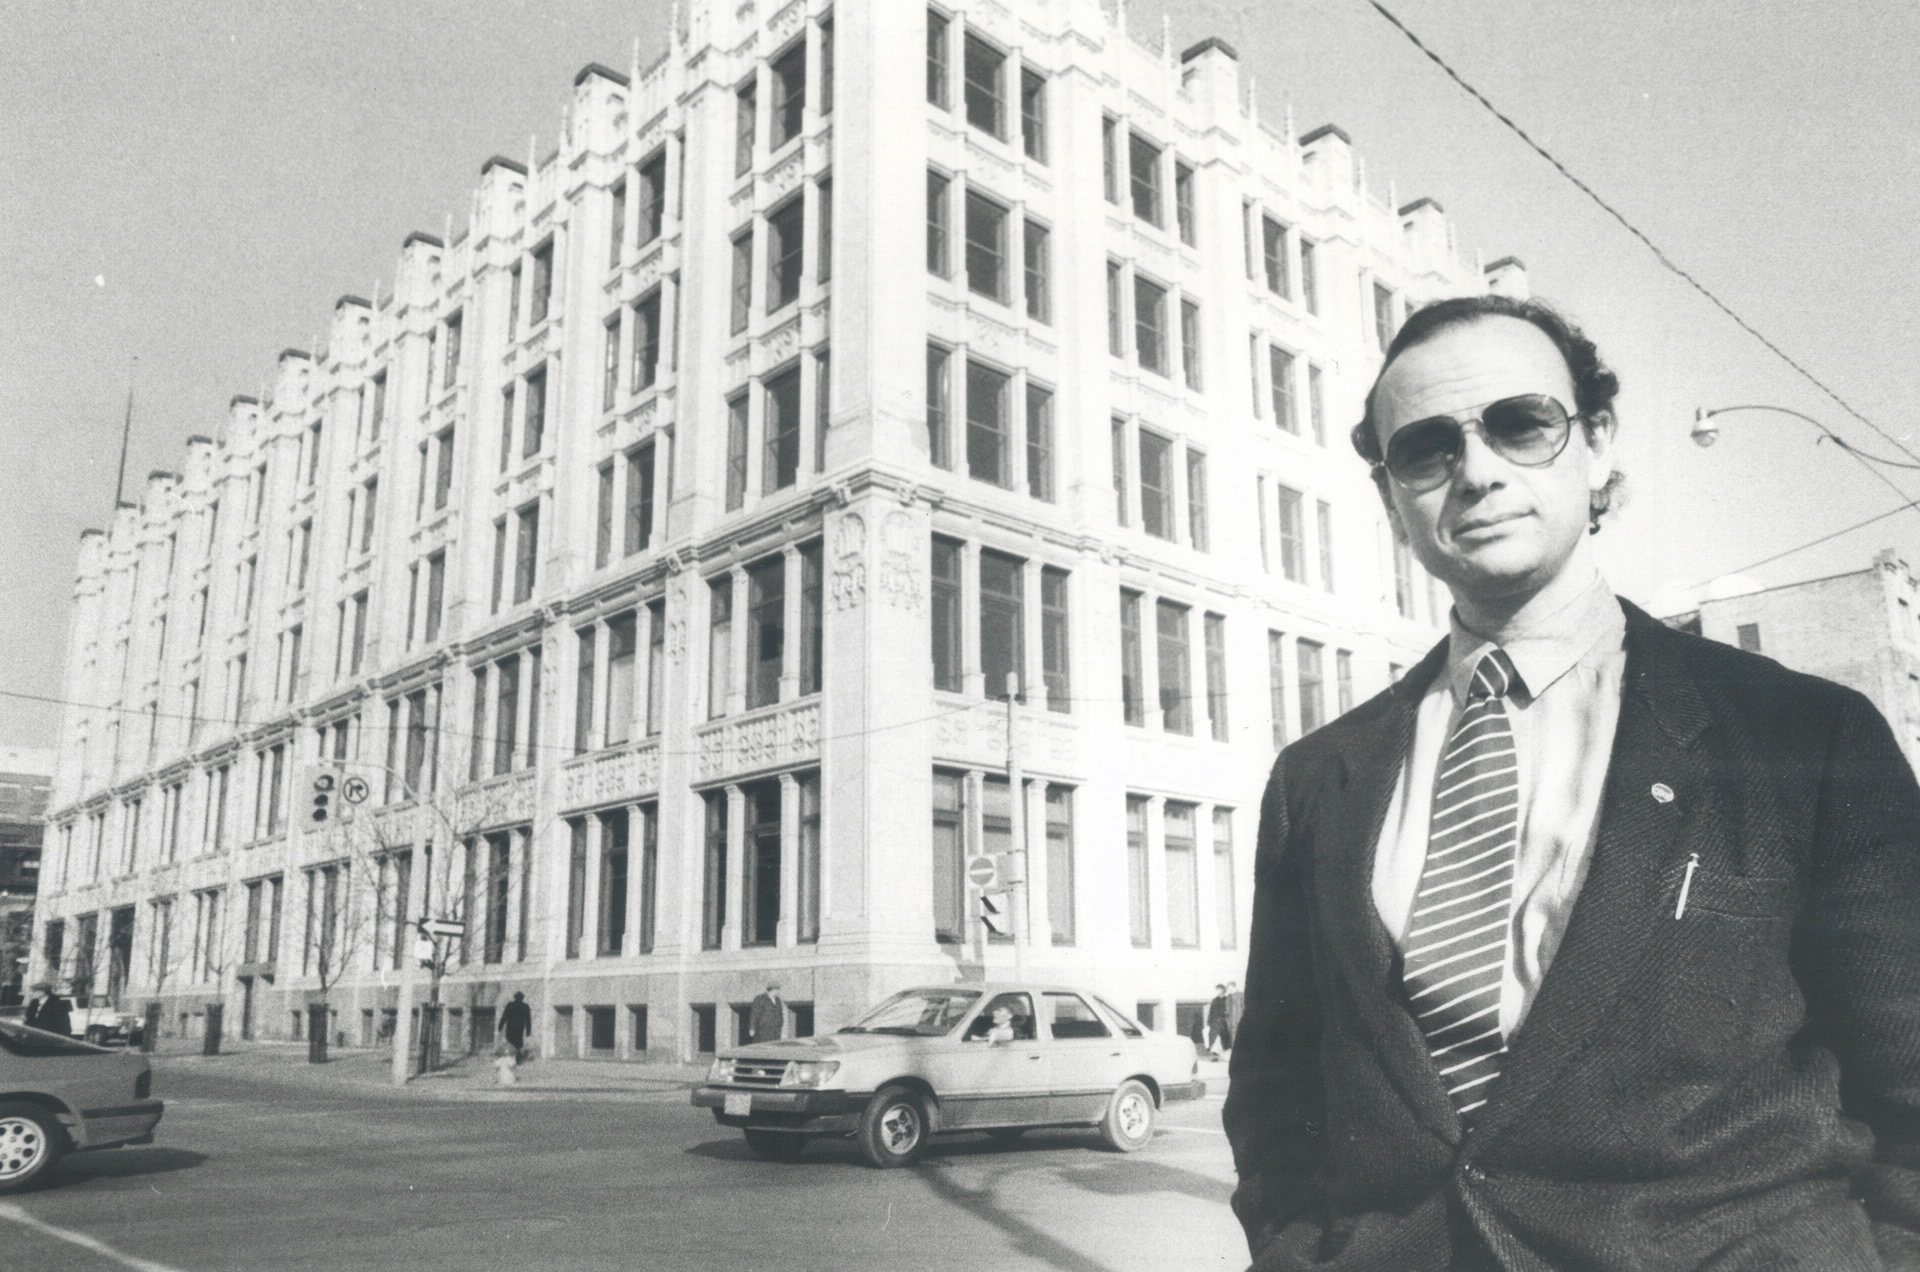 Un homme avec des lunettes de soleil et un complet se trouve sur un coin de rue. De l’autre côté de la rue se trouve un bâtiment orné de cinq étages.